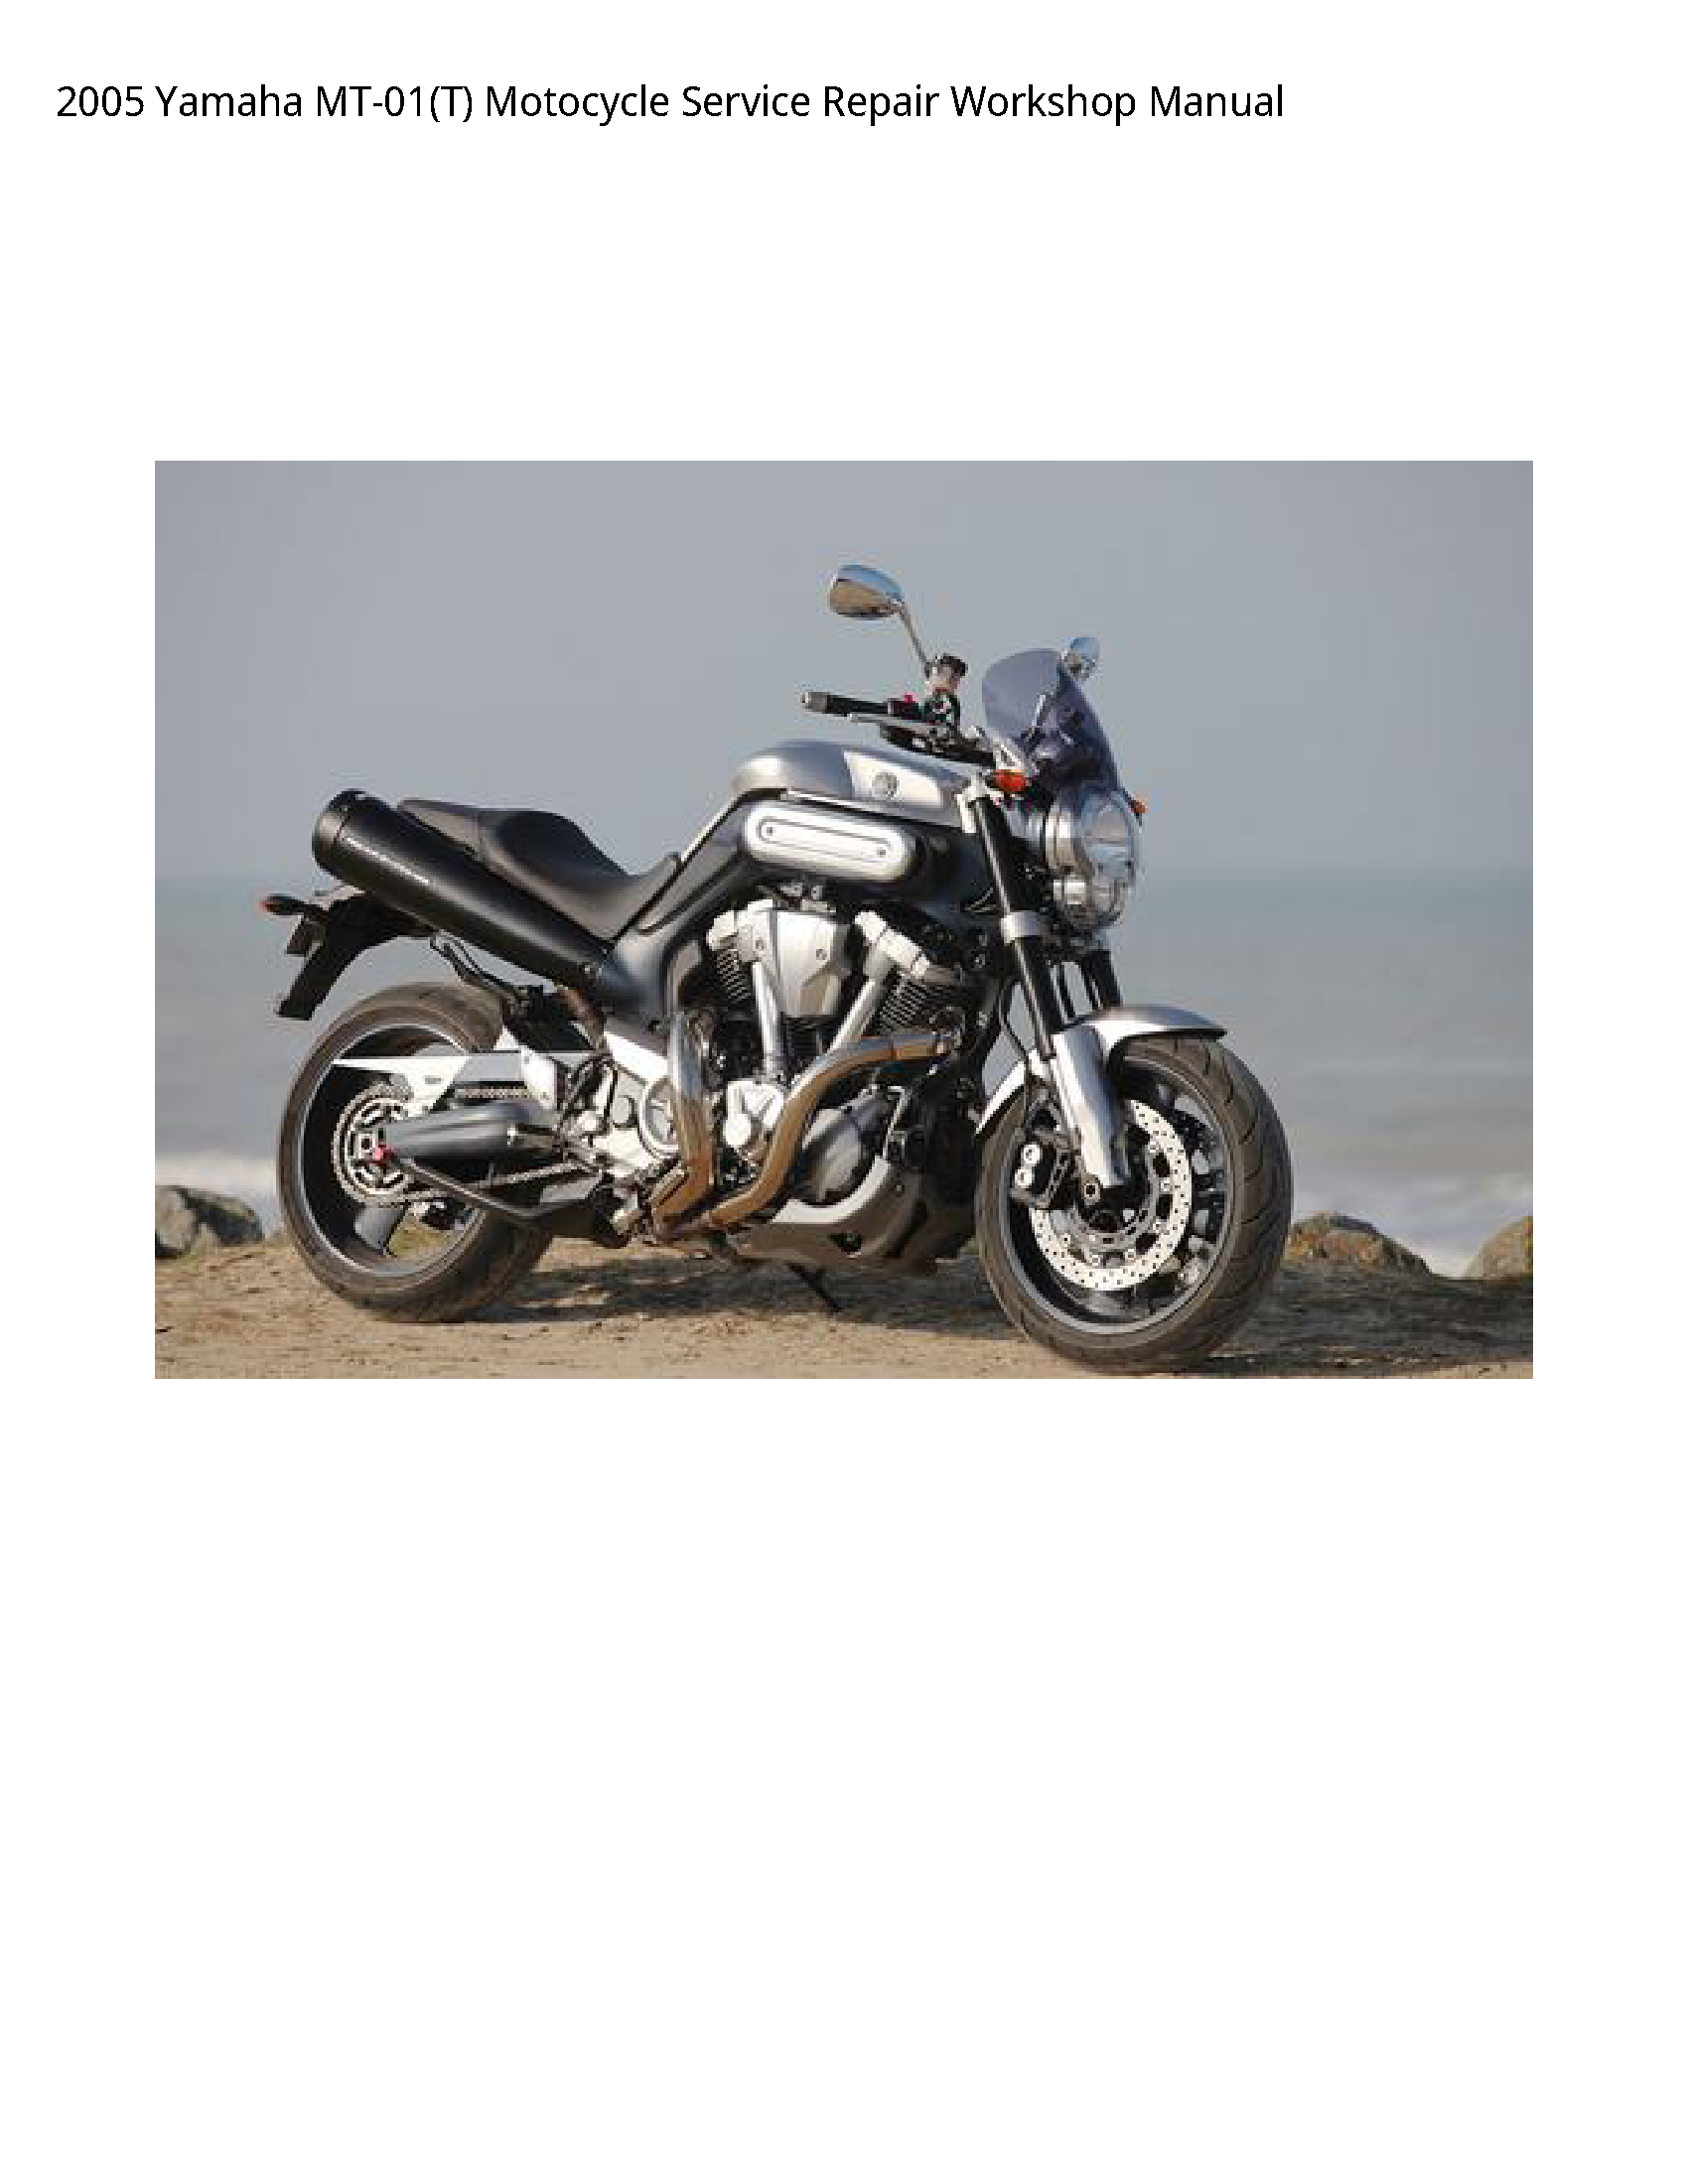 Yamaha MT-01(T) Motocycle manual